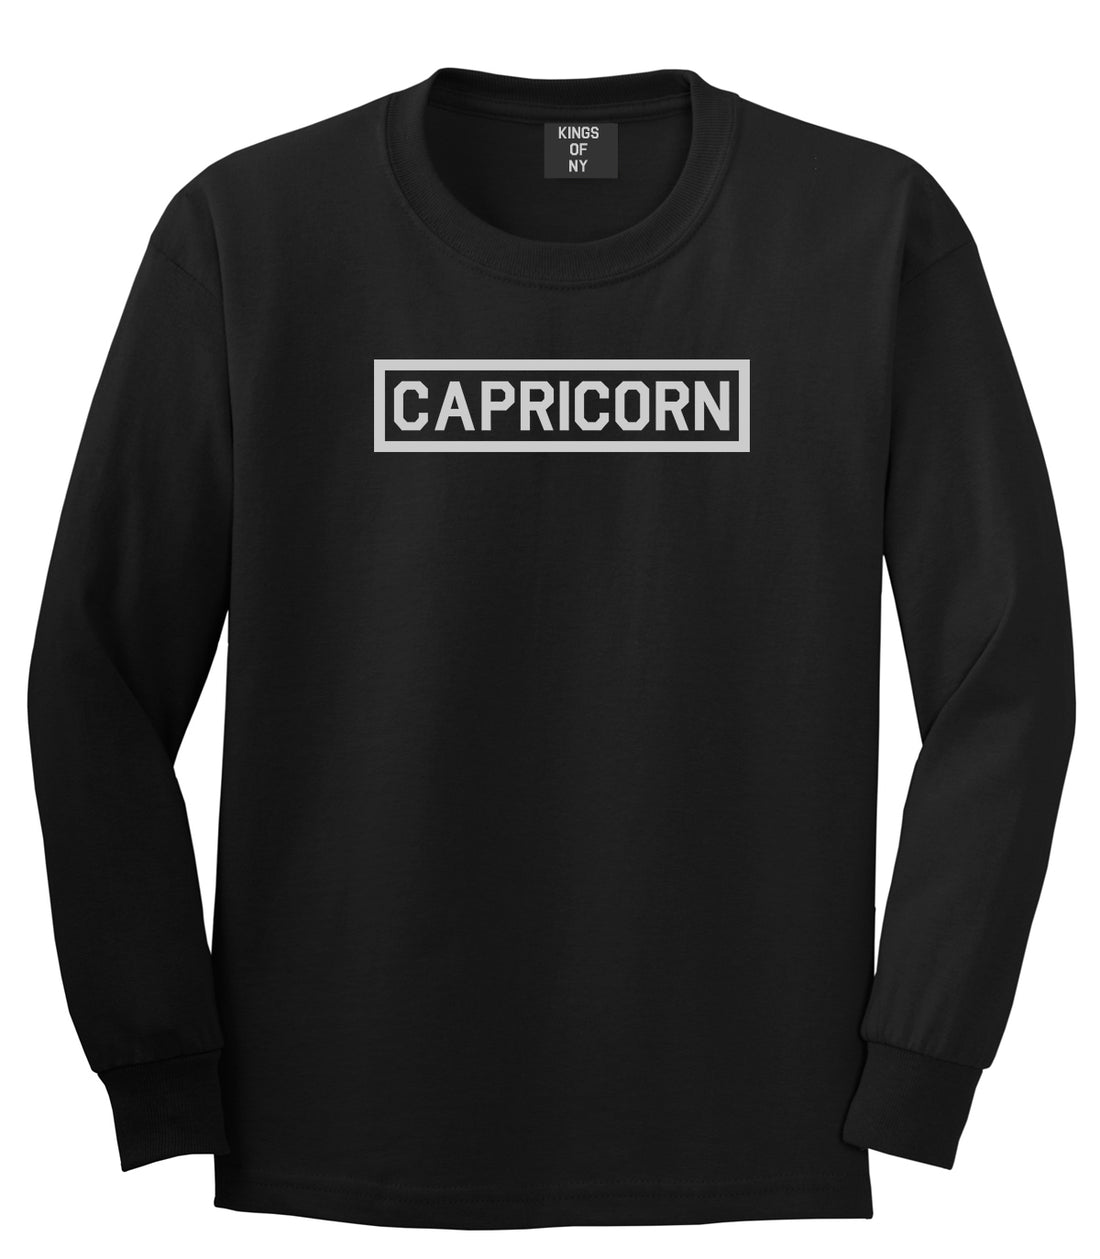 Capricorn Horoscope Sign Mens Black Long Sleeve T-Shirt by KINGS OF NY